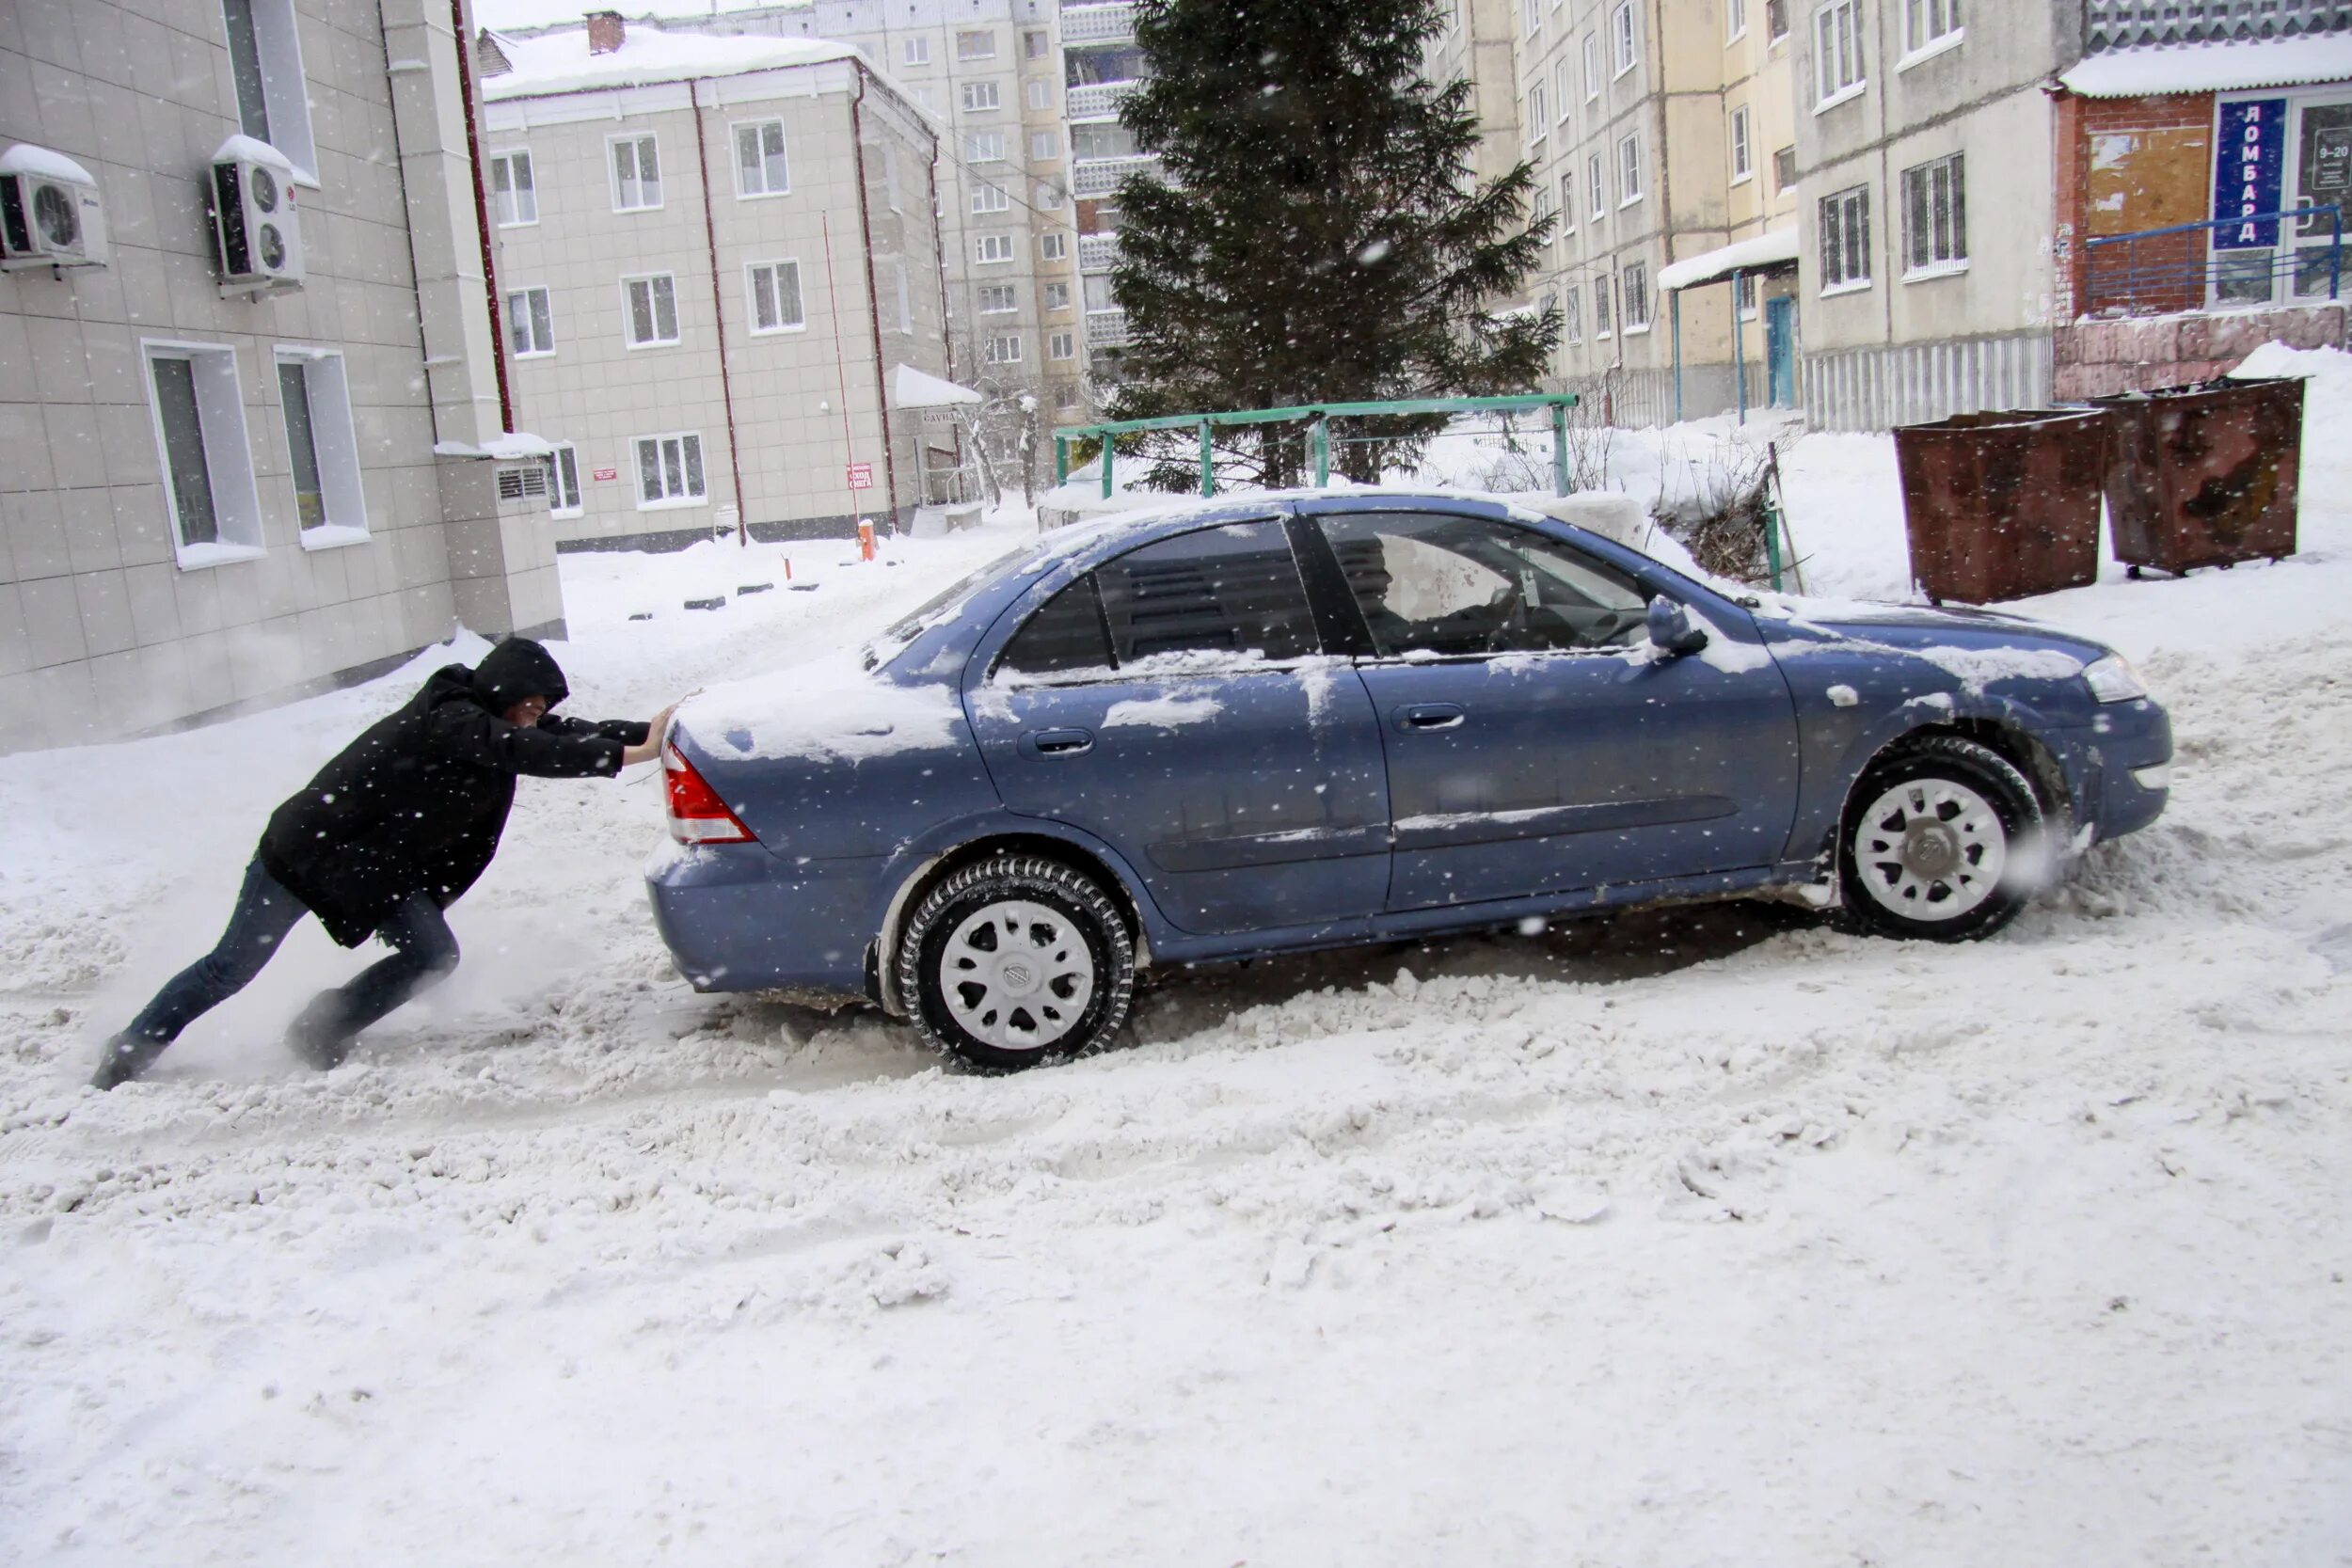 Застревают в сугробах. Толкают машину в снегу. Машина застряла в снегу. Автомобиль забуксовал в снегу. Выталкивать из сугроба машину.